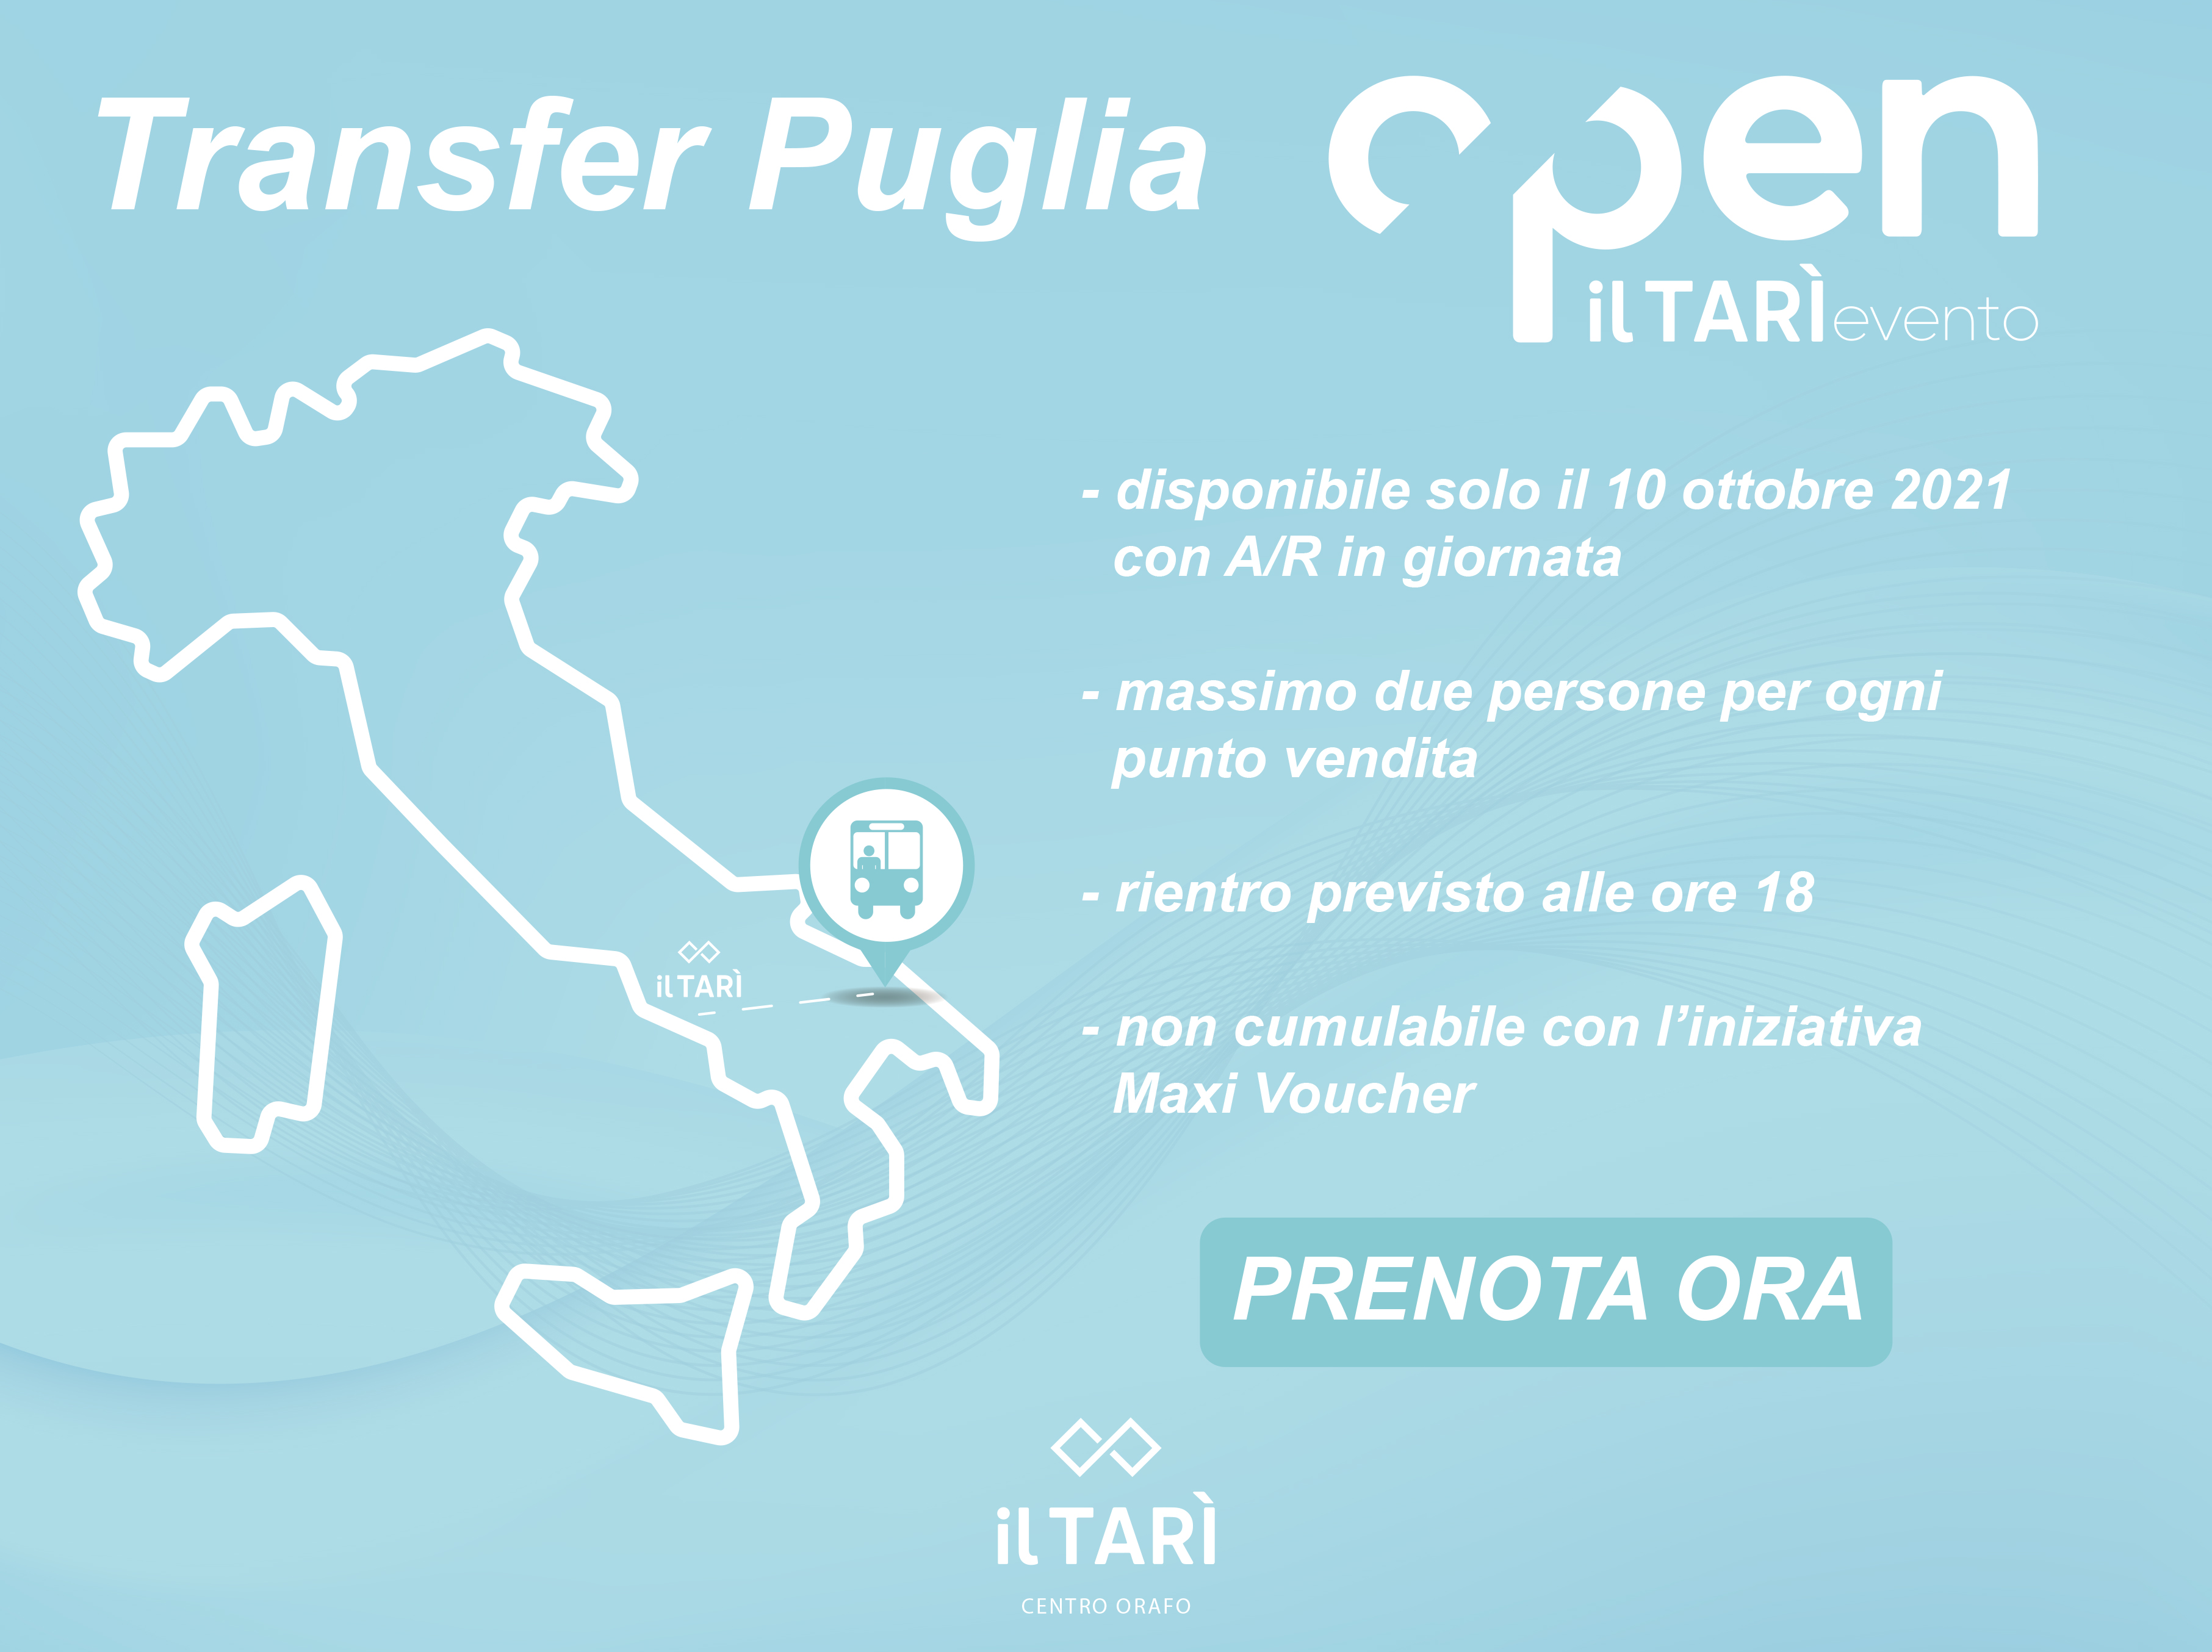 Transfer Puglia - Open! ottobre 2021